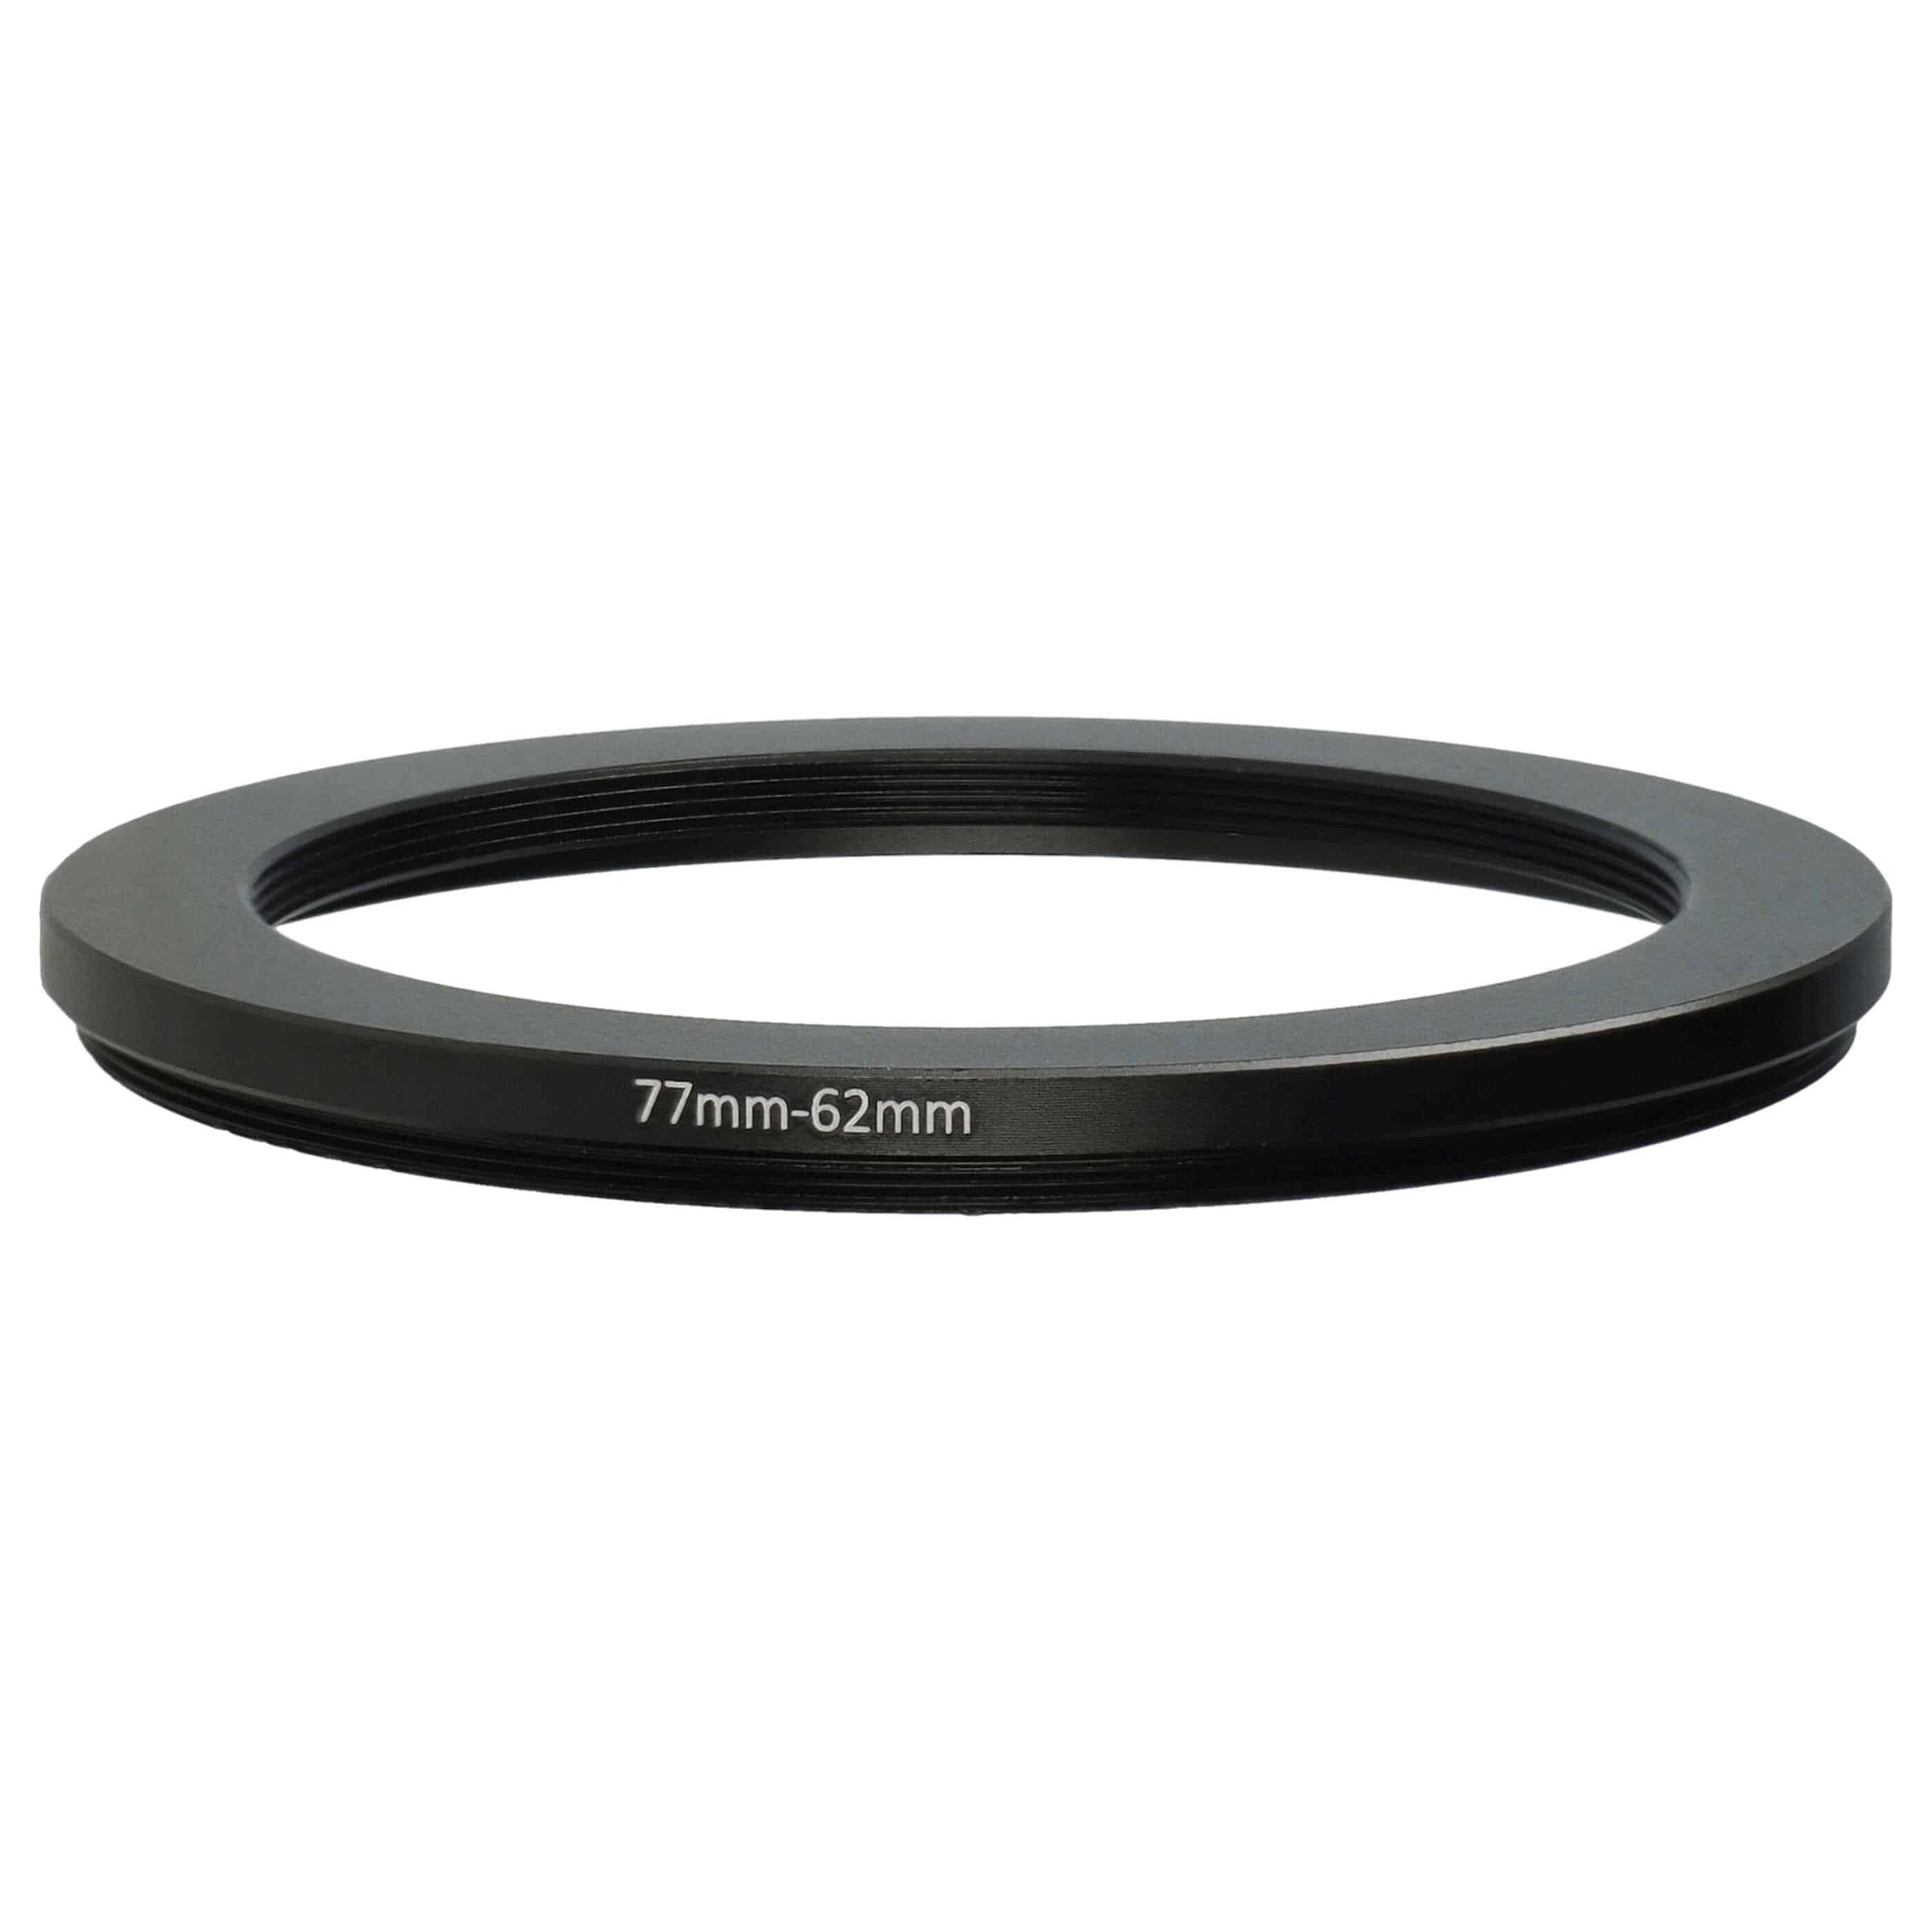 Anello adattatore step-down da 77 mm a 62 mm per obiettivo fotocamera - Adattatore filtro, metallo, nero